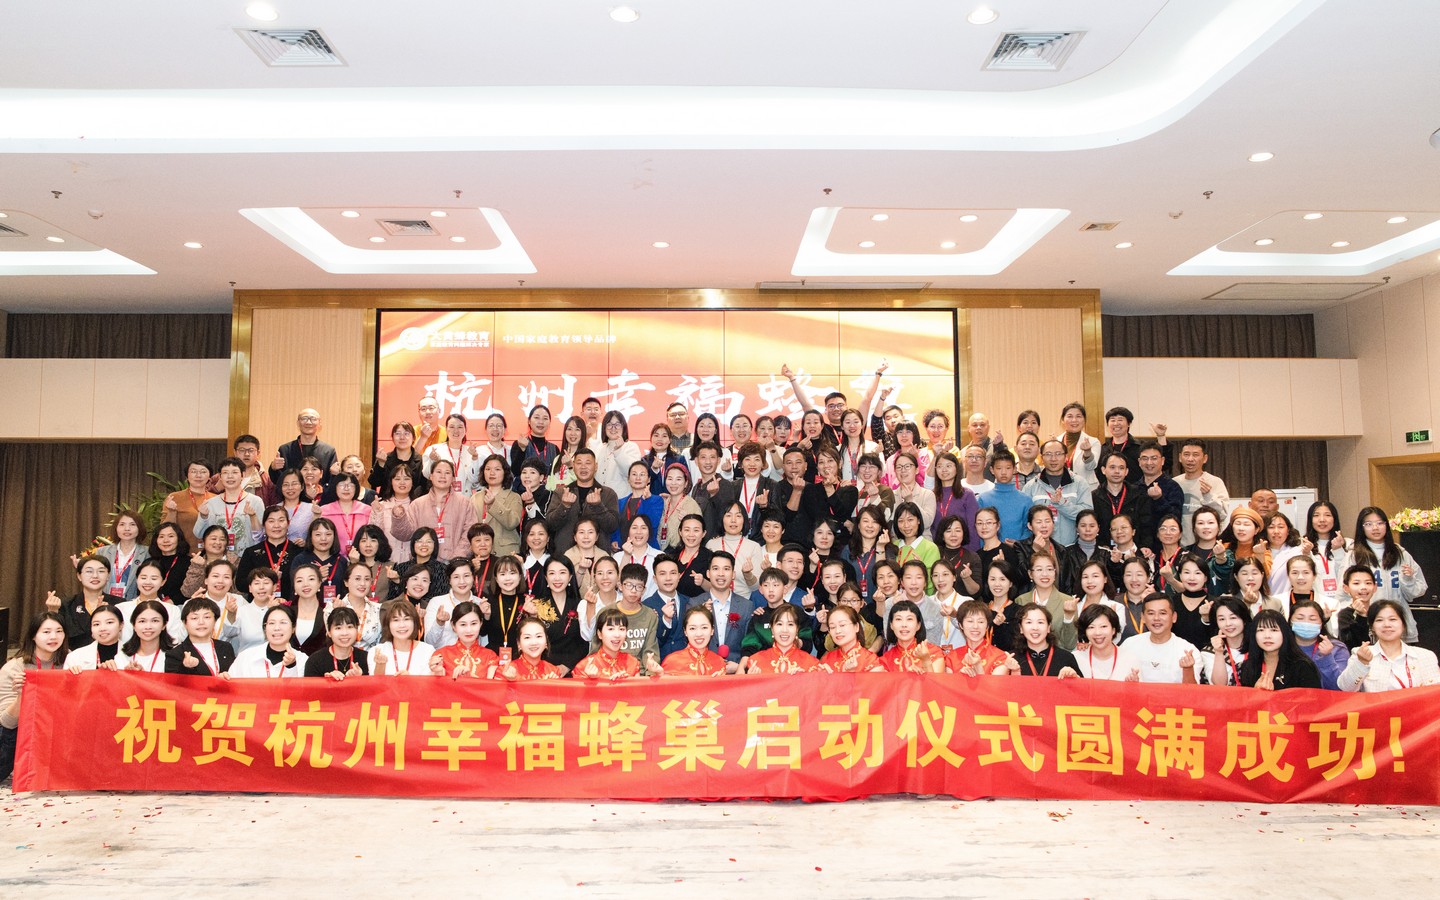 热烈祝贺幸福蜂巢·杭州站启动仪式圆满成功！